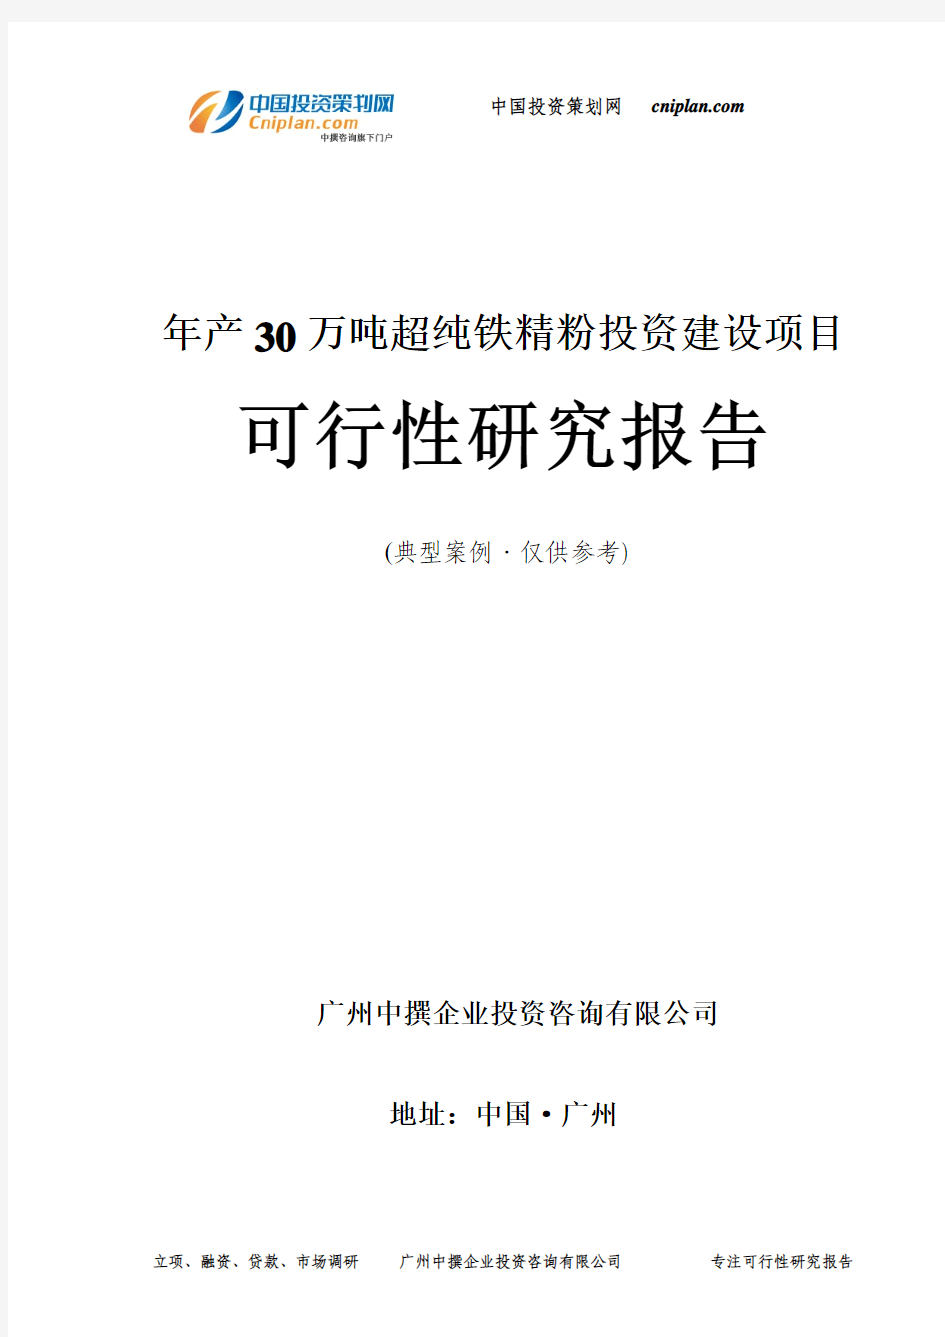 年产30万吨超纯铁精粉投资建设项目可行性研究报告-广州中撰咨询